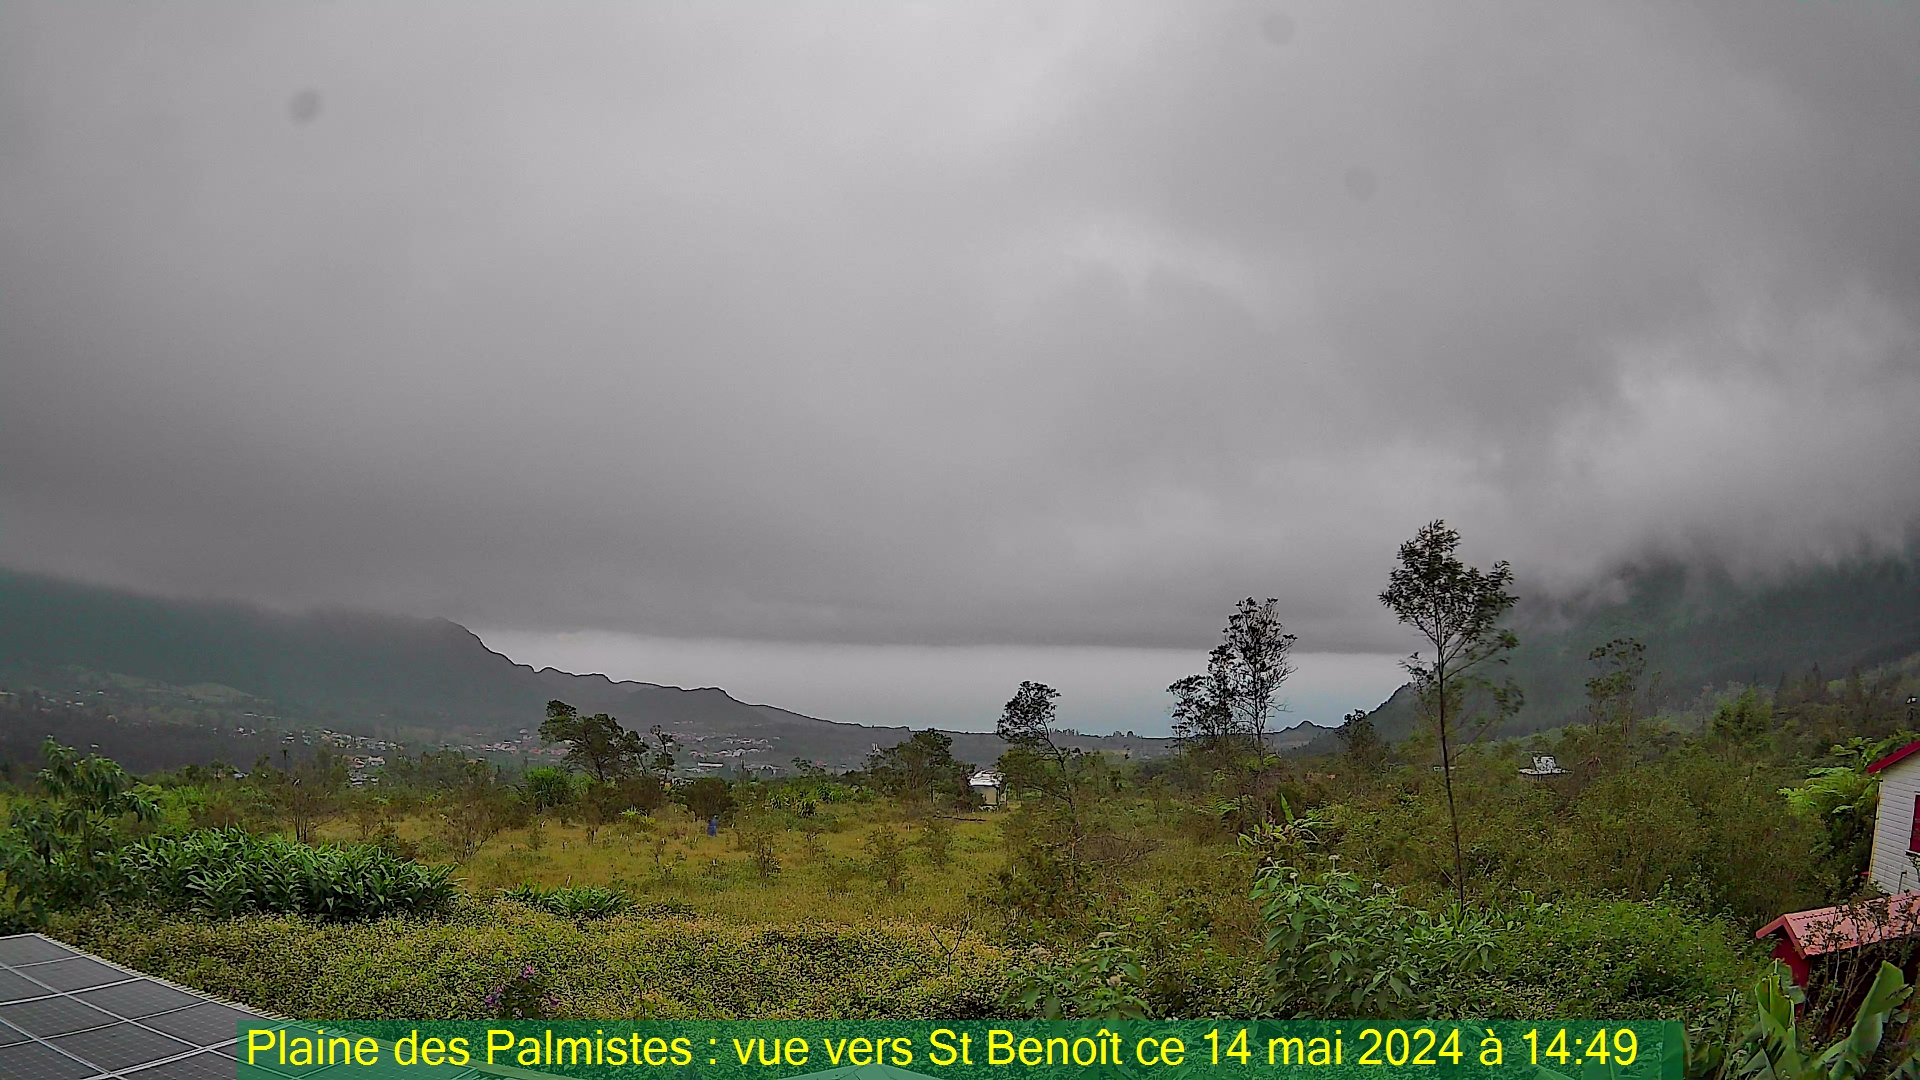 Saint-Denis (Réunion) Do. 14:50